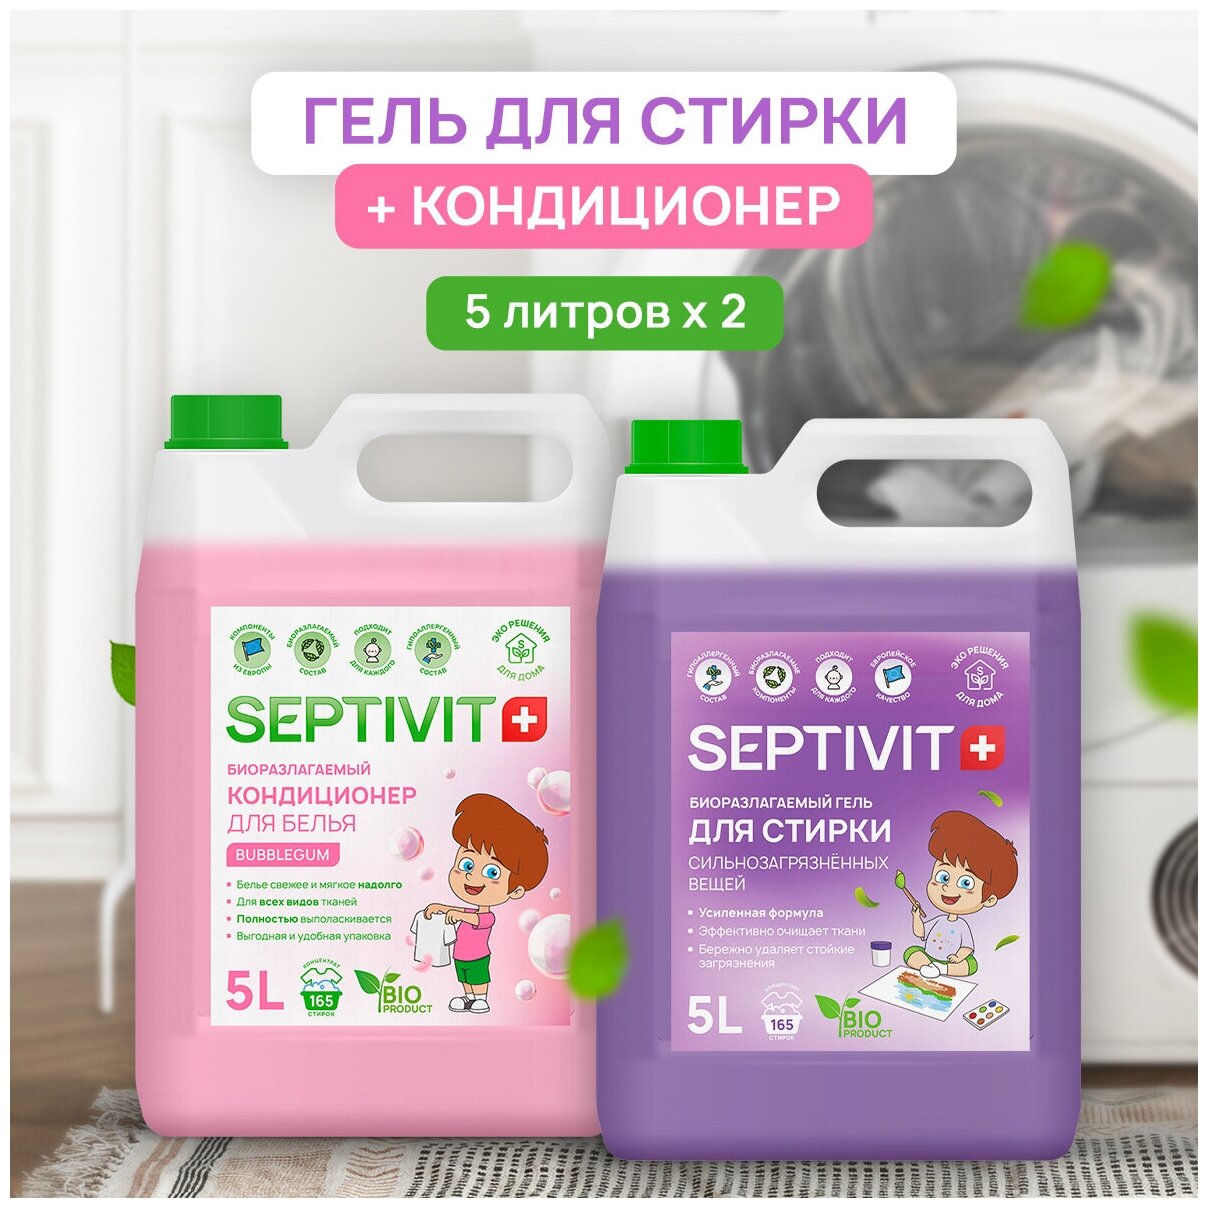 Набор Septivit Premium Гель для стирки Сильнозагрязненных тканей 5л + Кондиционер Bubble gum Септивит